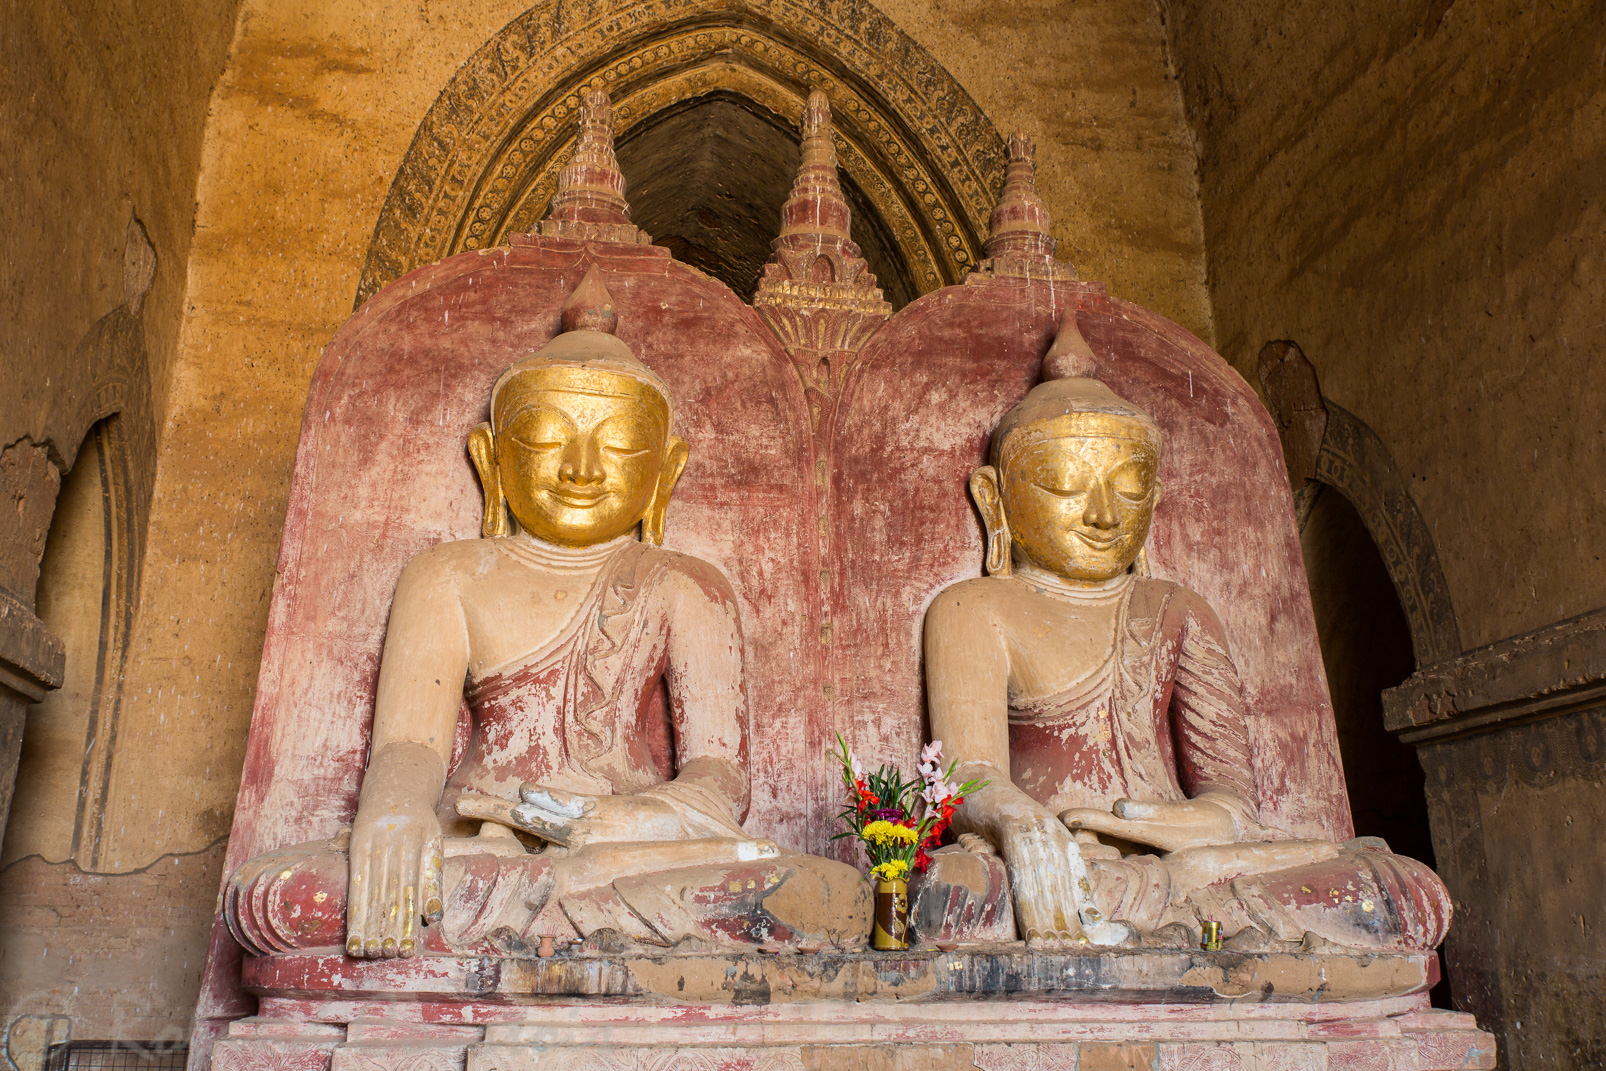 Temple Dhammayangyi. A l’Ouest deux Bouddhas identiques sont assis côte à côte, Ce serait le Bouddha du présent Shakyamuni et celui du futur Maitreya.